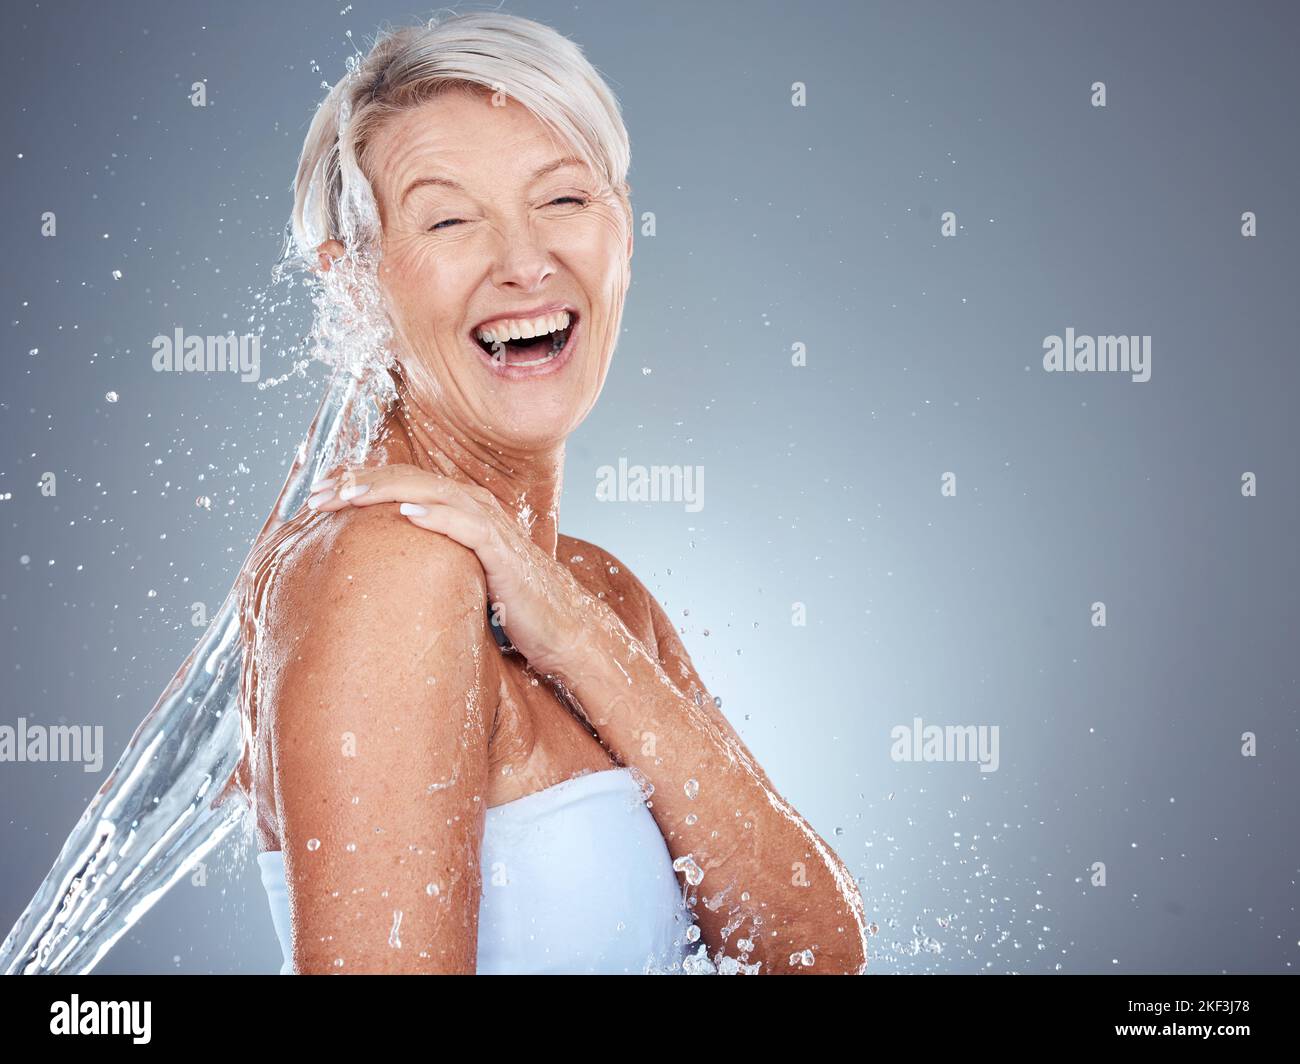 Beauty, Senior und Reinigung Körper mit Wasserspritzer für die Pflege, Waschen und Hygiene Routine. Glücklich, Gesundheit und natürliche Körperpflege der reifen Frau Stockfoto